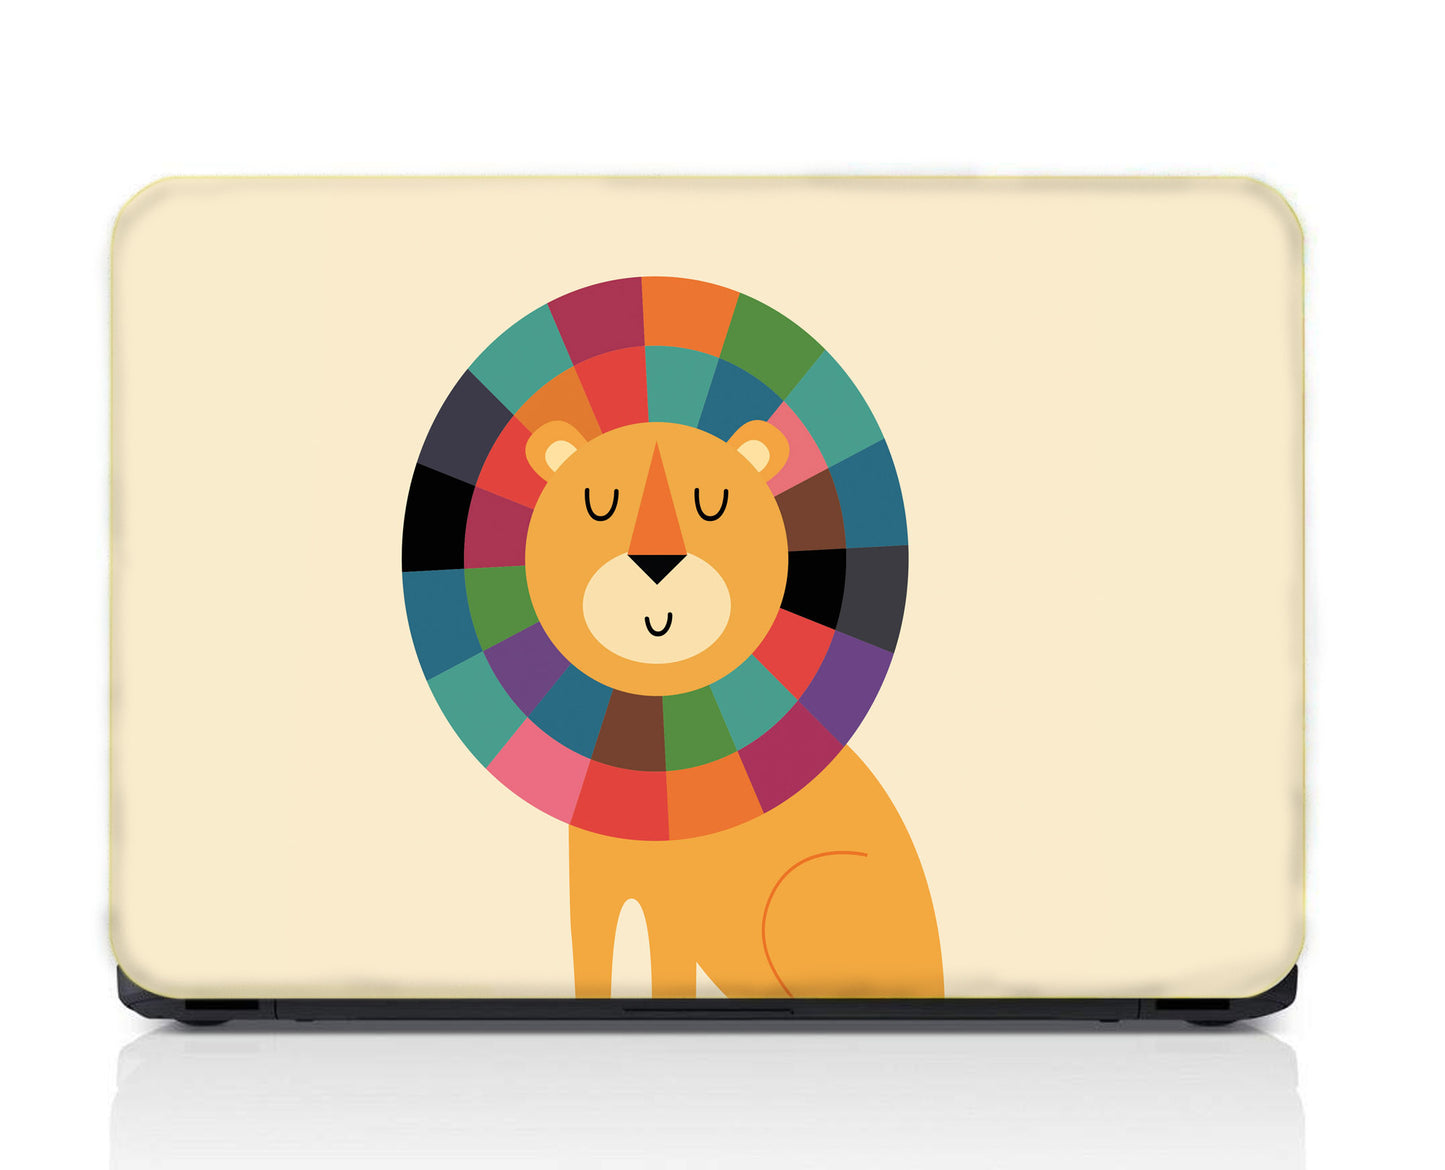 Lion Minimal Art Laptop Skin Vinyl, No Bubble, Multicolor 11.6"- 15.6" inch Laptop